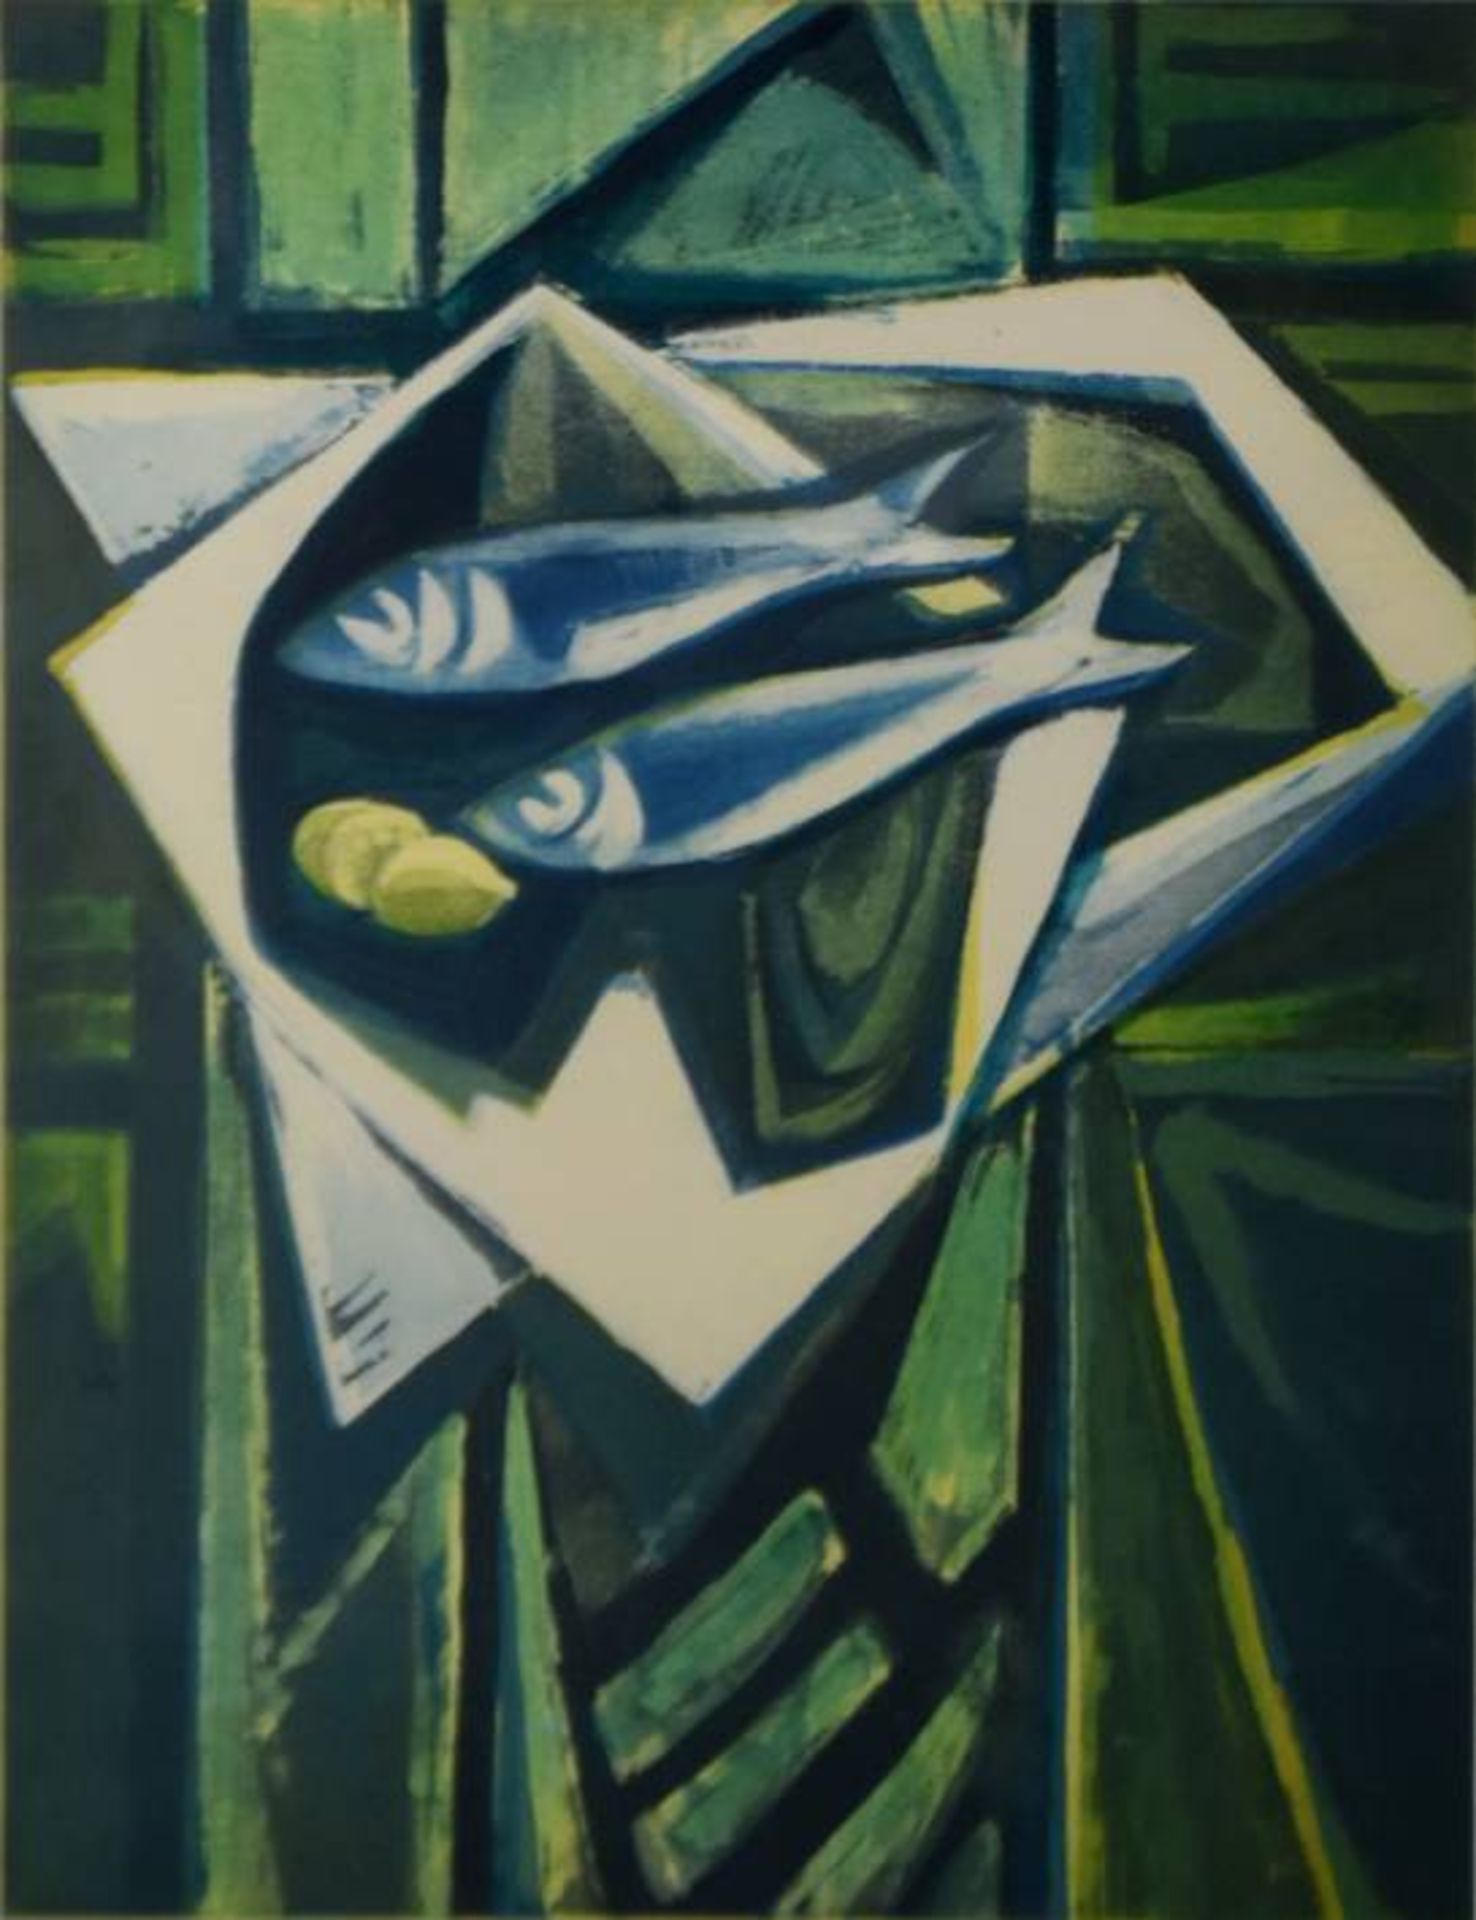 OSSWALD Karl (1925-1972 Singen) "Teller mit Fischen" in Grünblatönen, Farbgraphik, rechts unten - Image 3 of 5